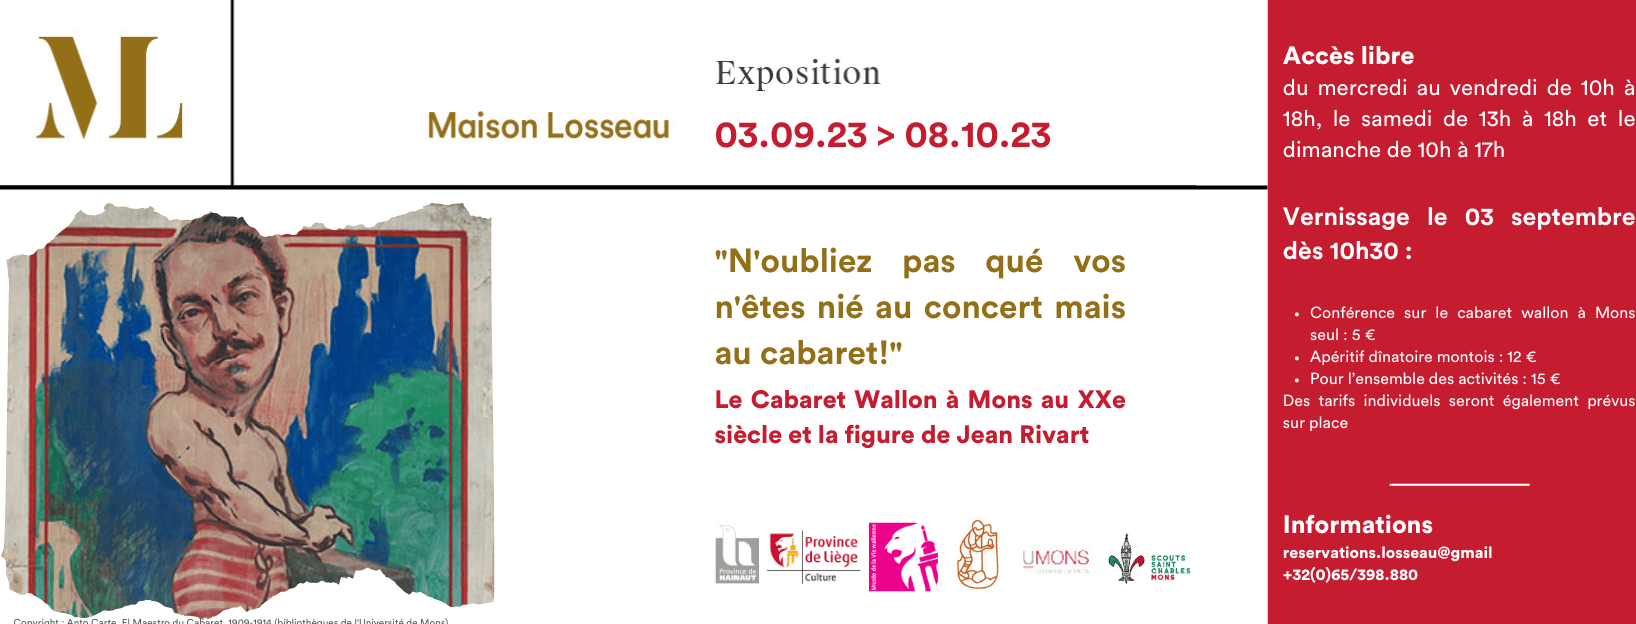 Visuel de l'exposition sur le cabaret wallon et Jean Rivart